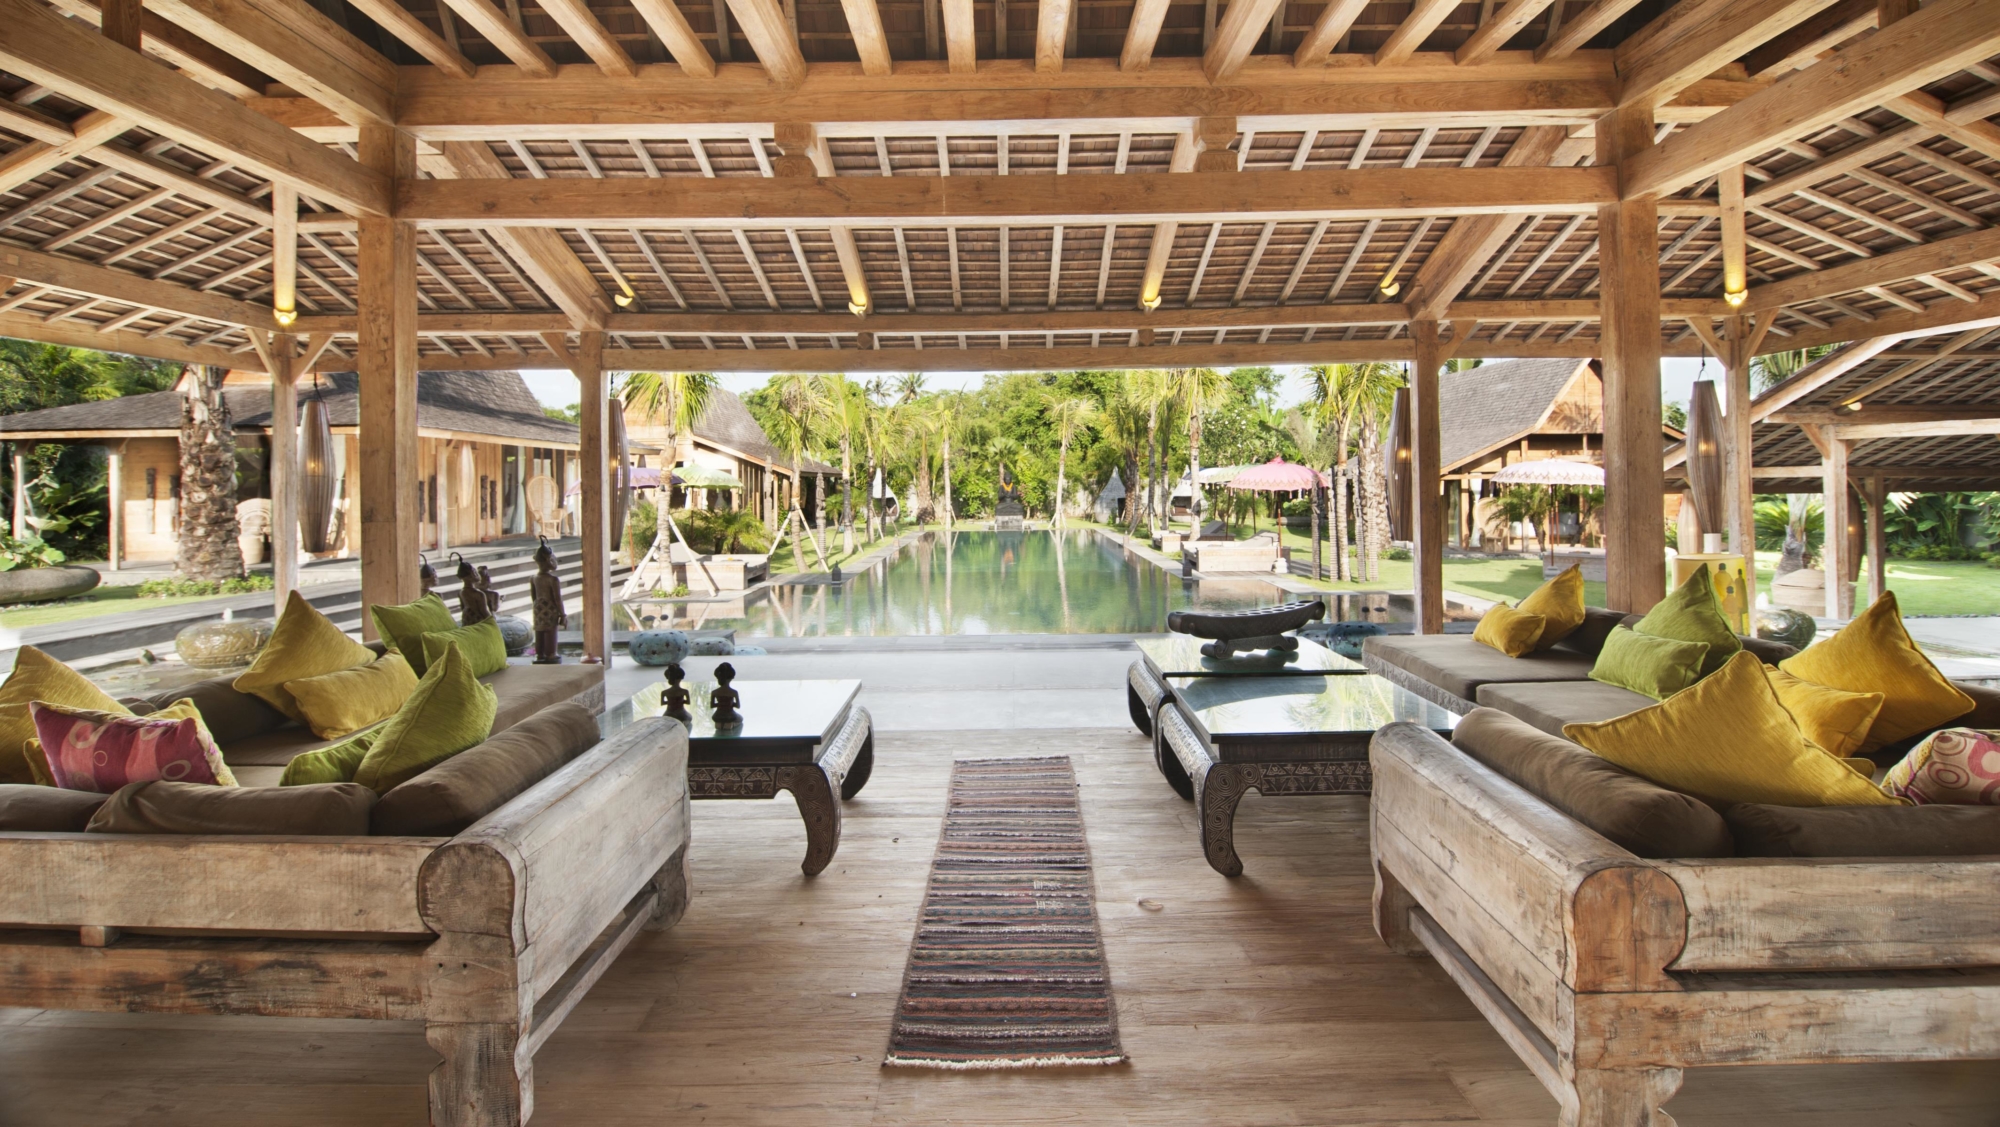  Villa  Kayu  5 Bedrooms Sleeps 10 Pool Umalas Bali